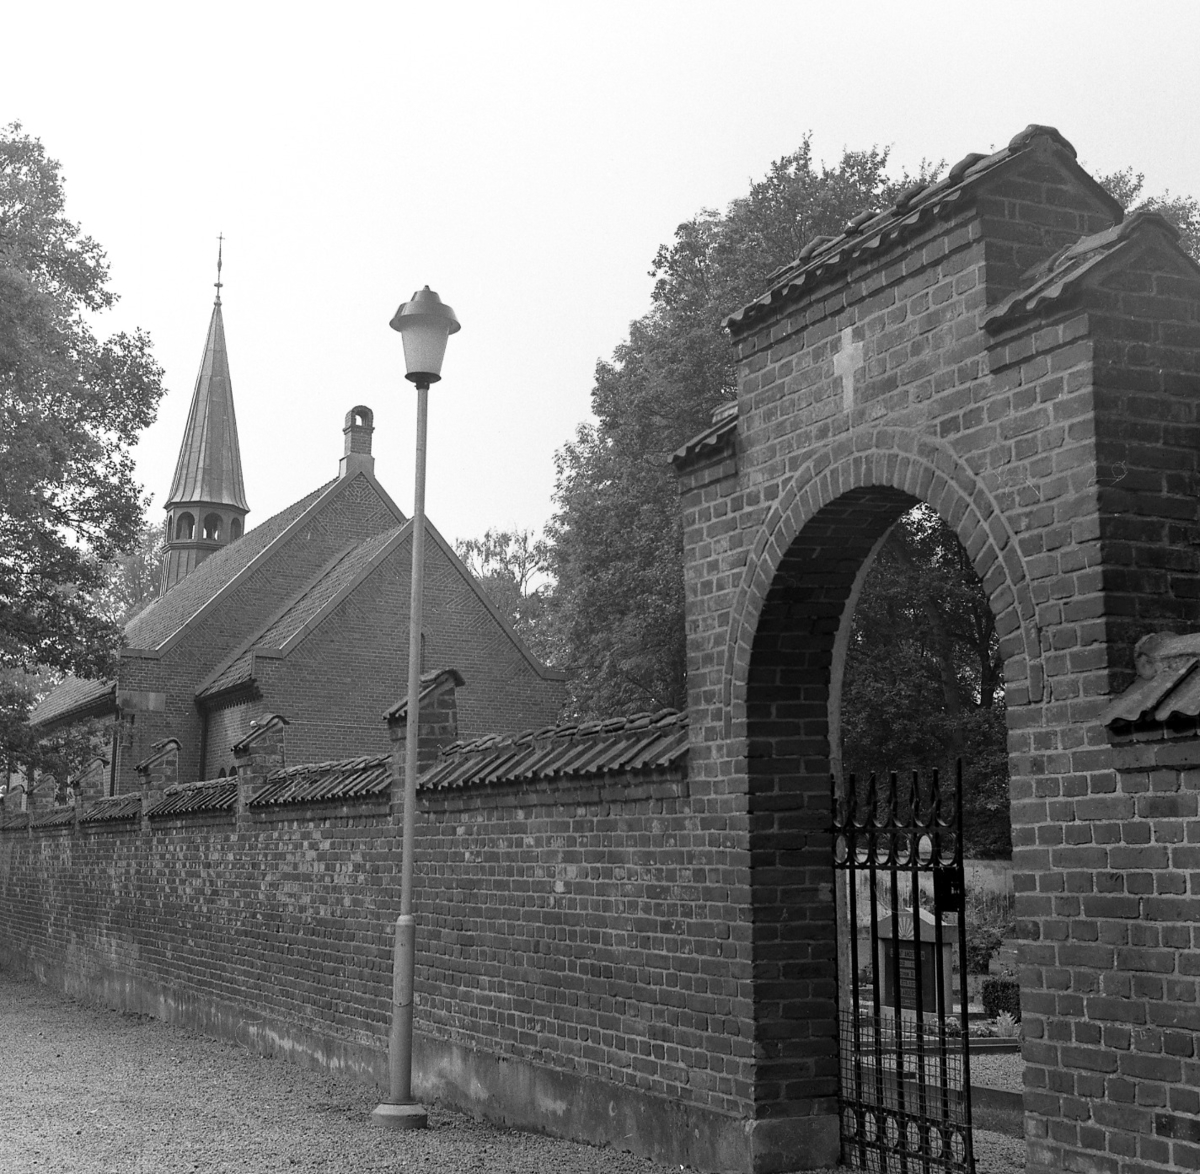 Sperlingsholms kapell